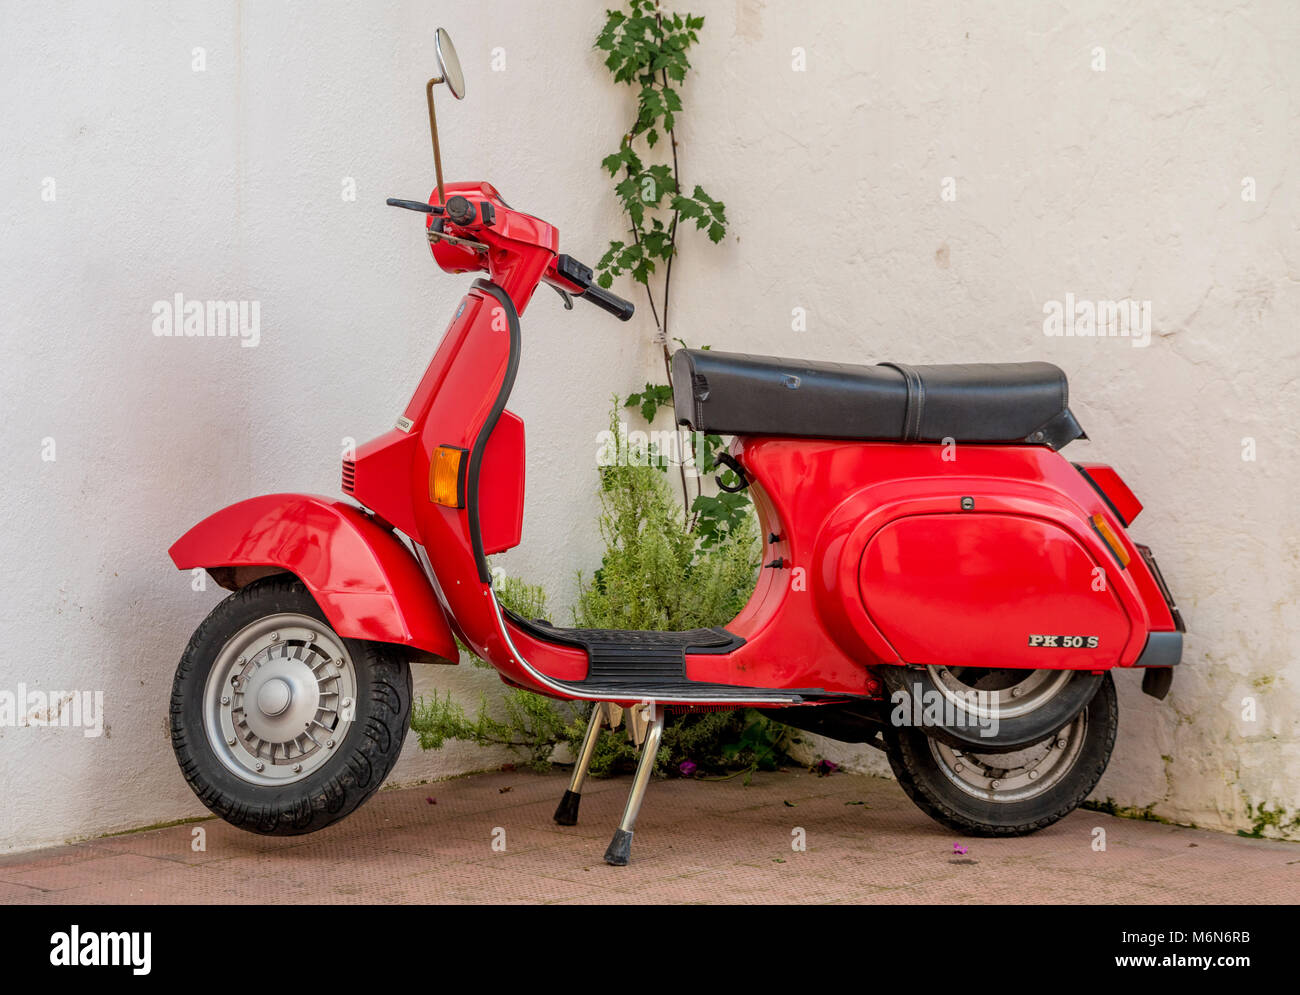 Ciclomotor italiano vespa pk 50 s fotografías e imágenes de alta resolución  - Alamy